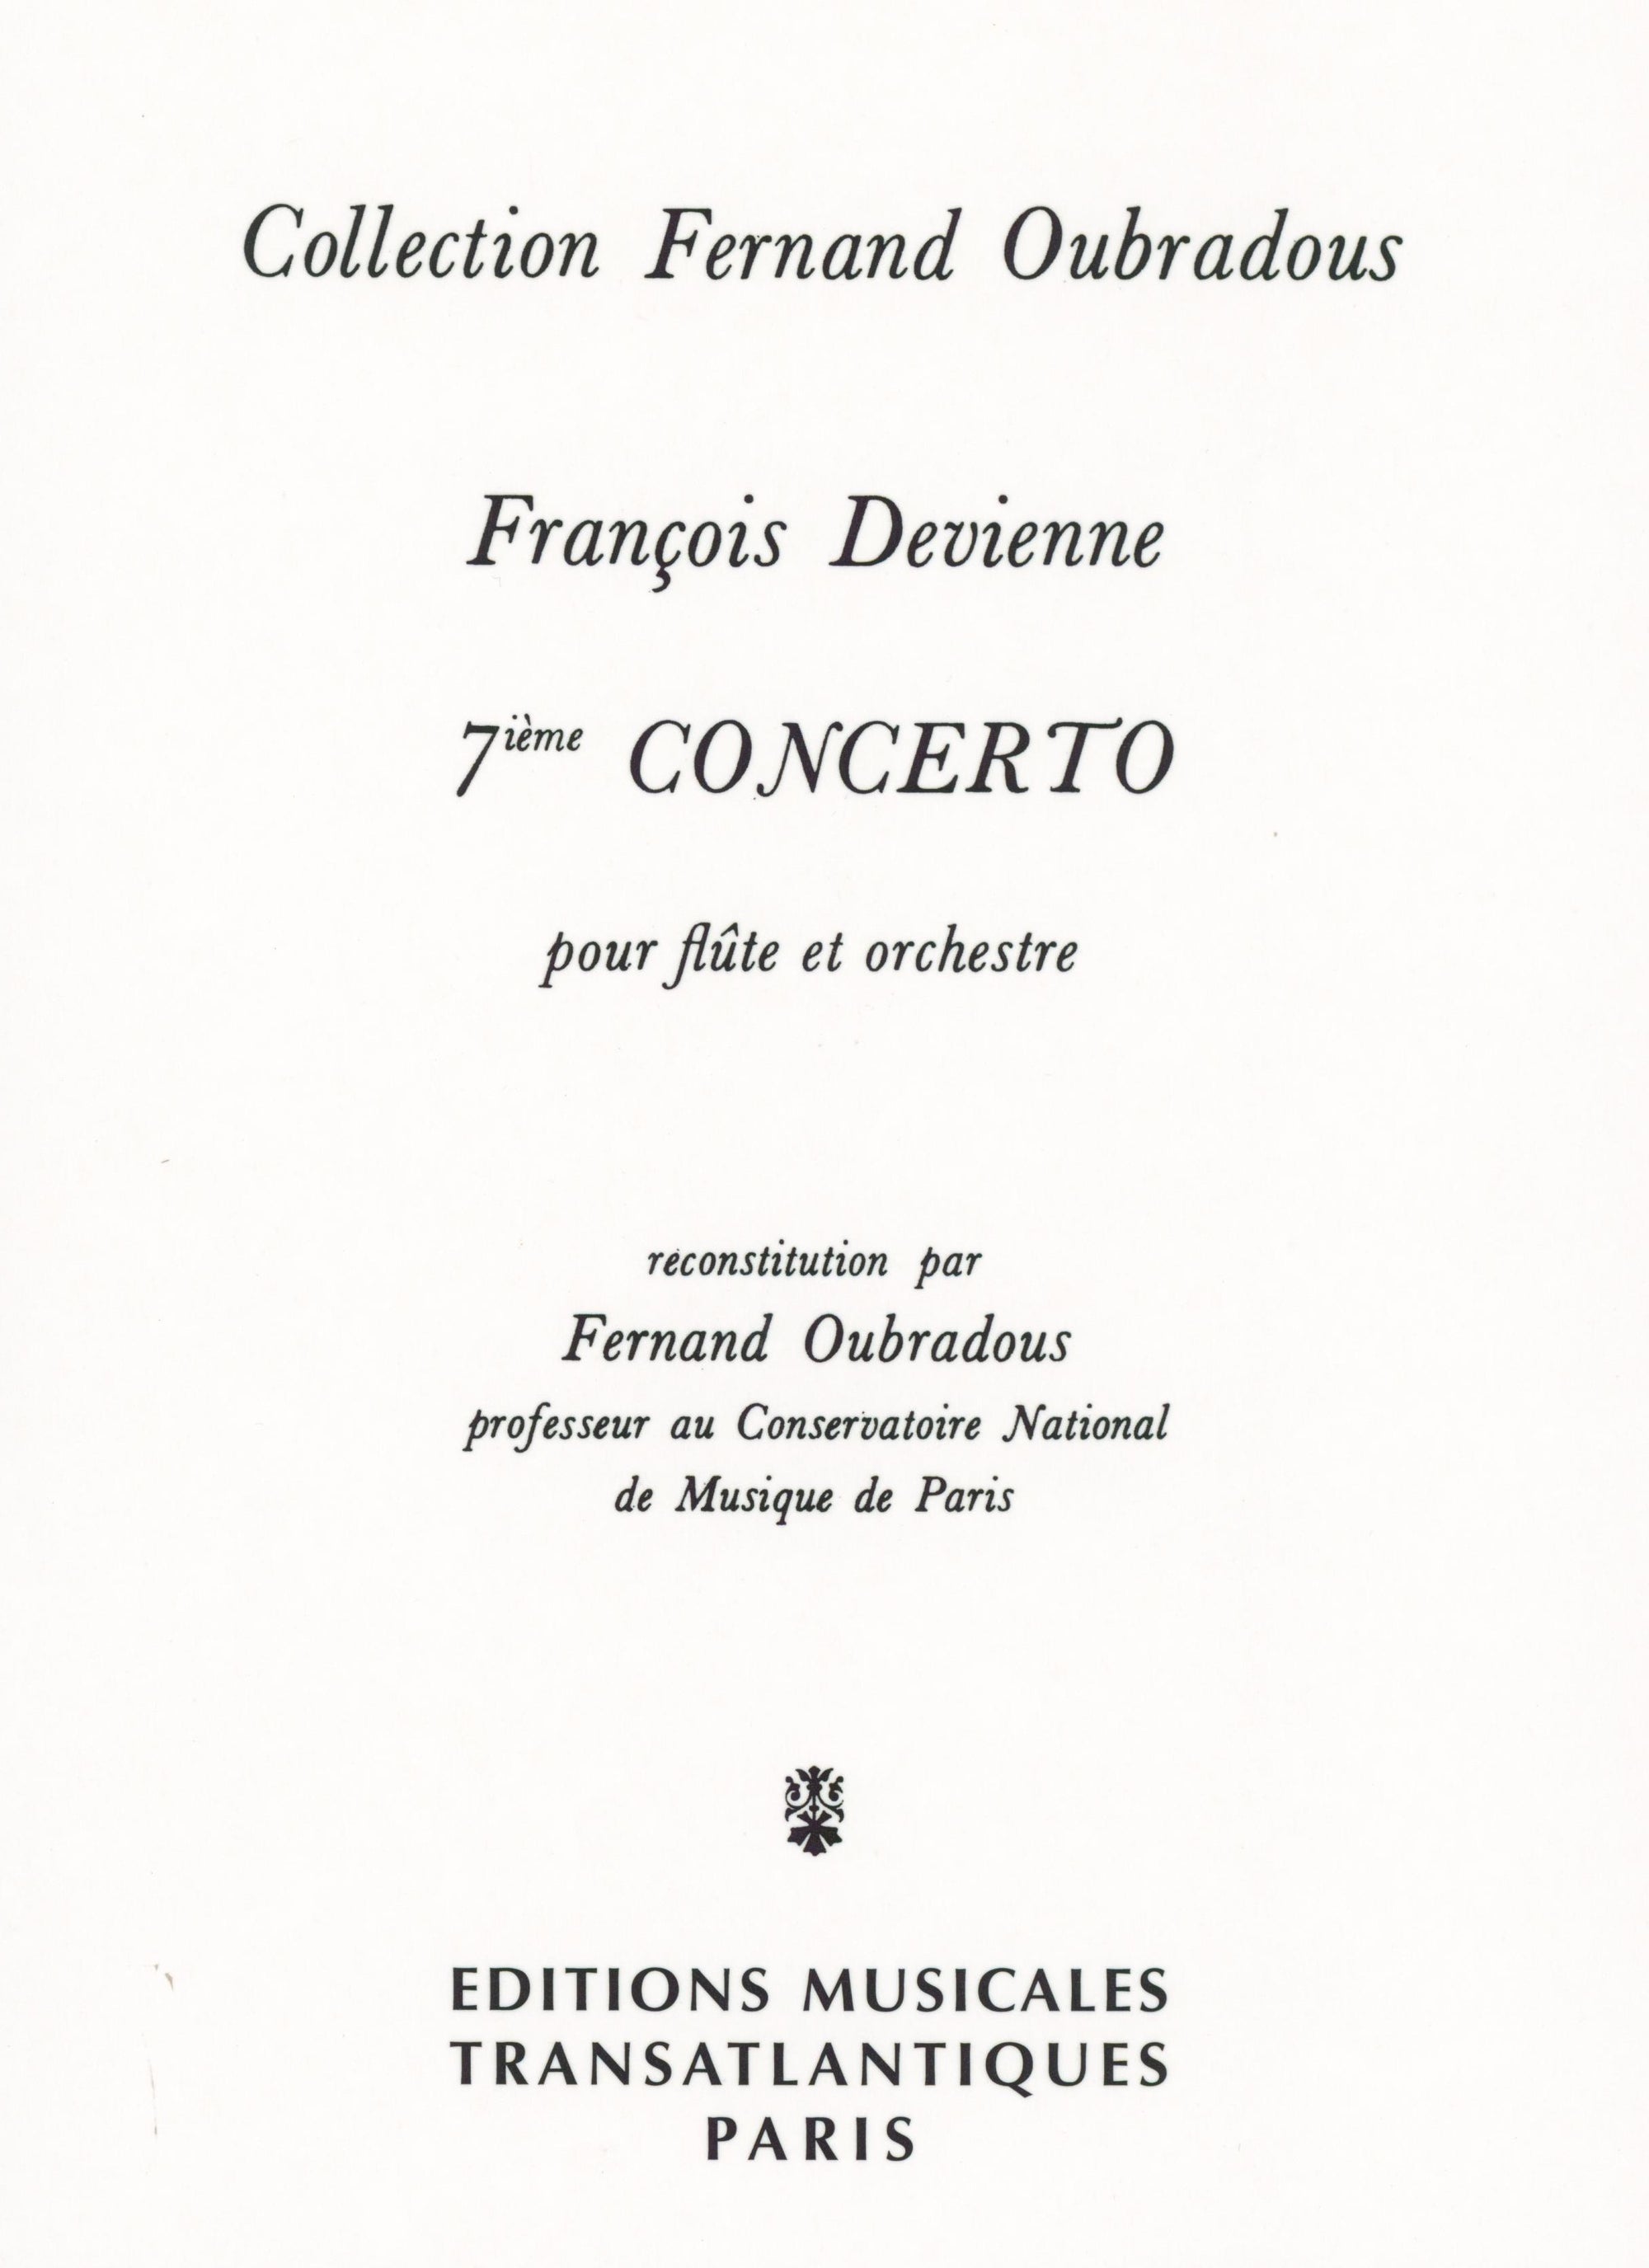 Devienne: Flute Concerto No. 7 in E Minor